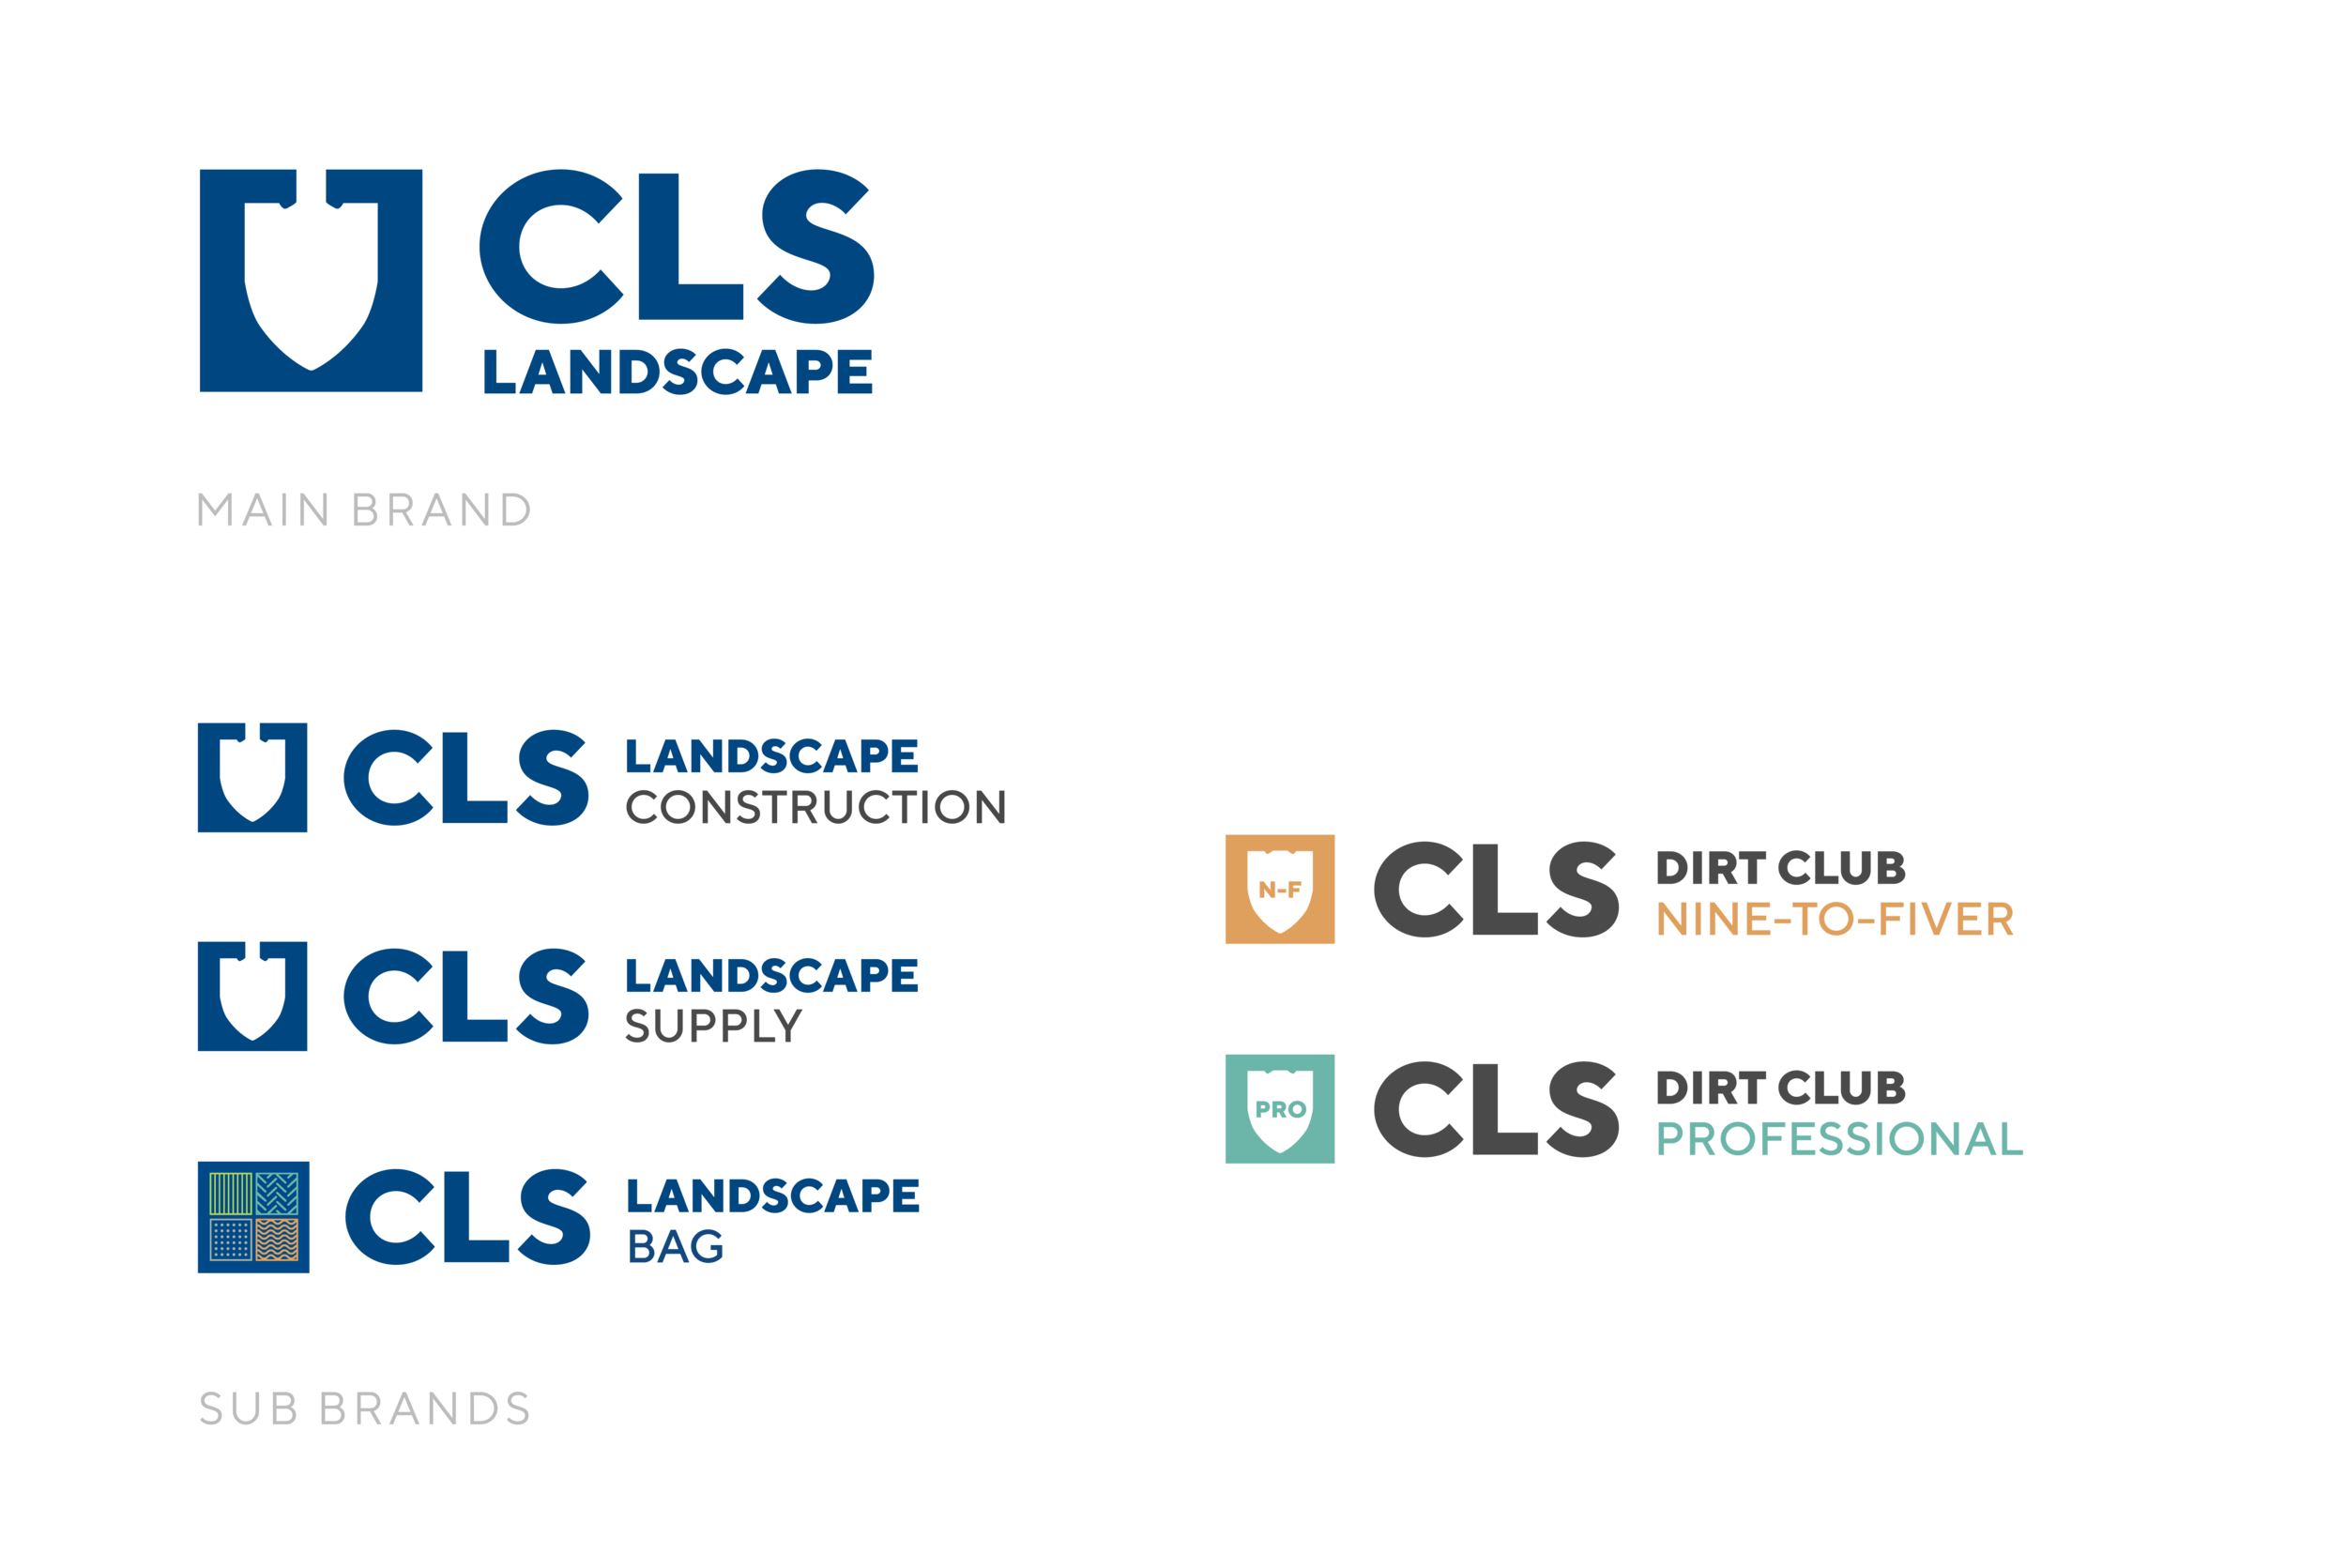 CLS Landscape Brand logos